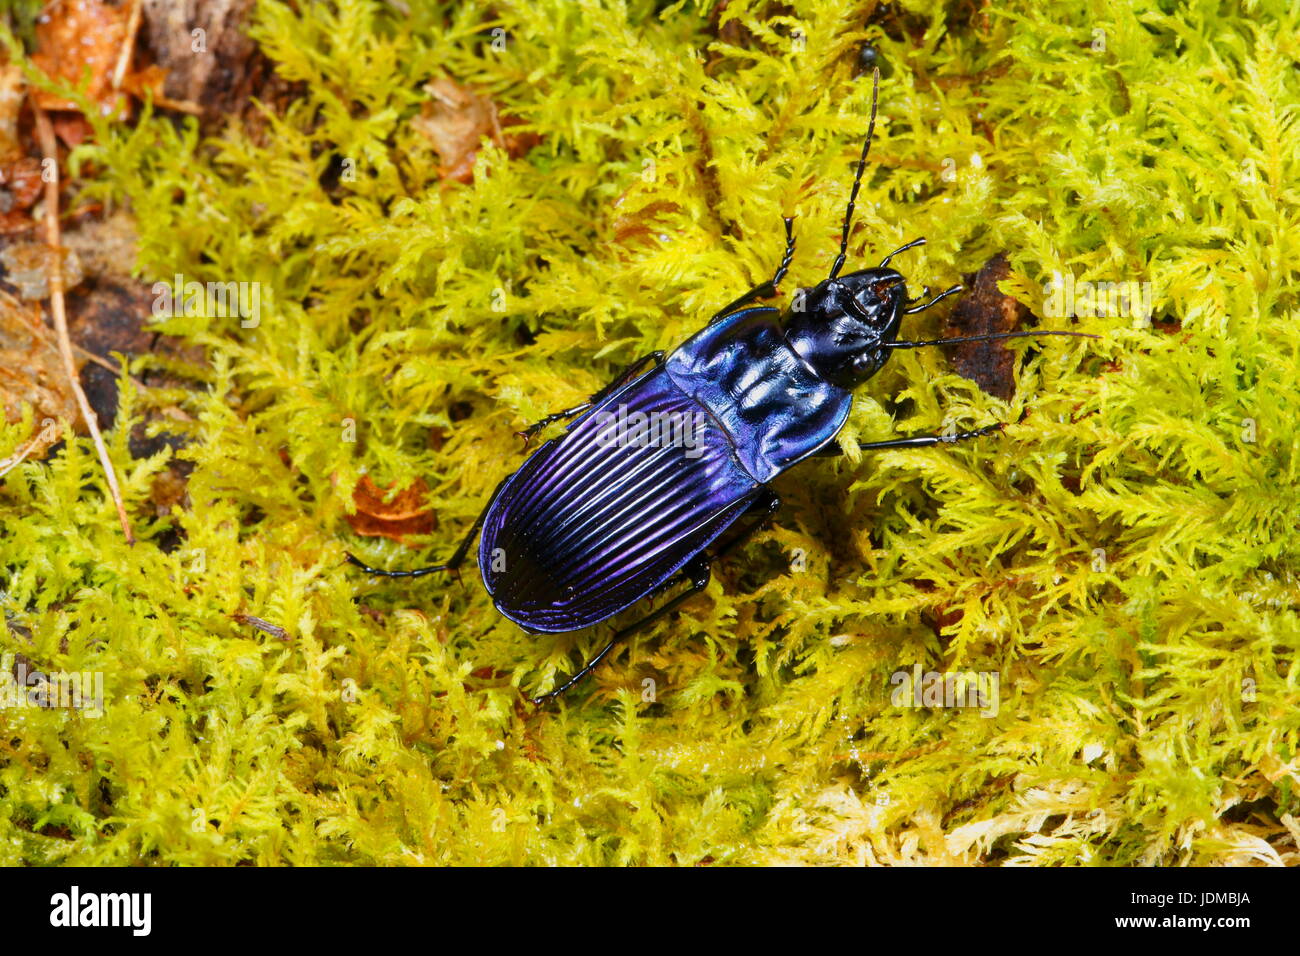 Cierre de un escarabajo de tierra violeta, Chalosoma claenius. Foto de stock